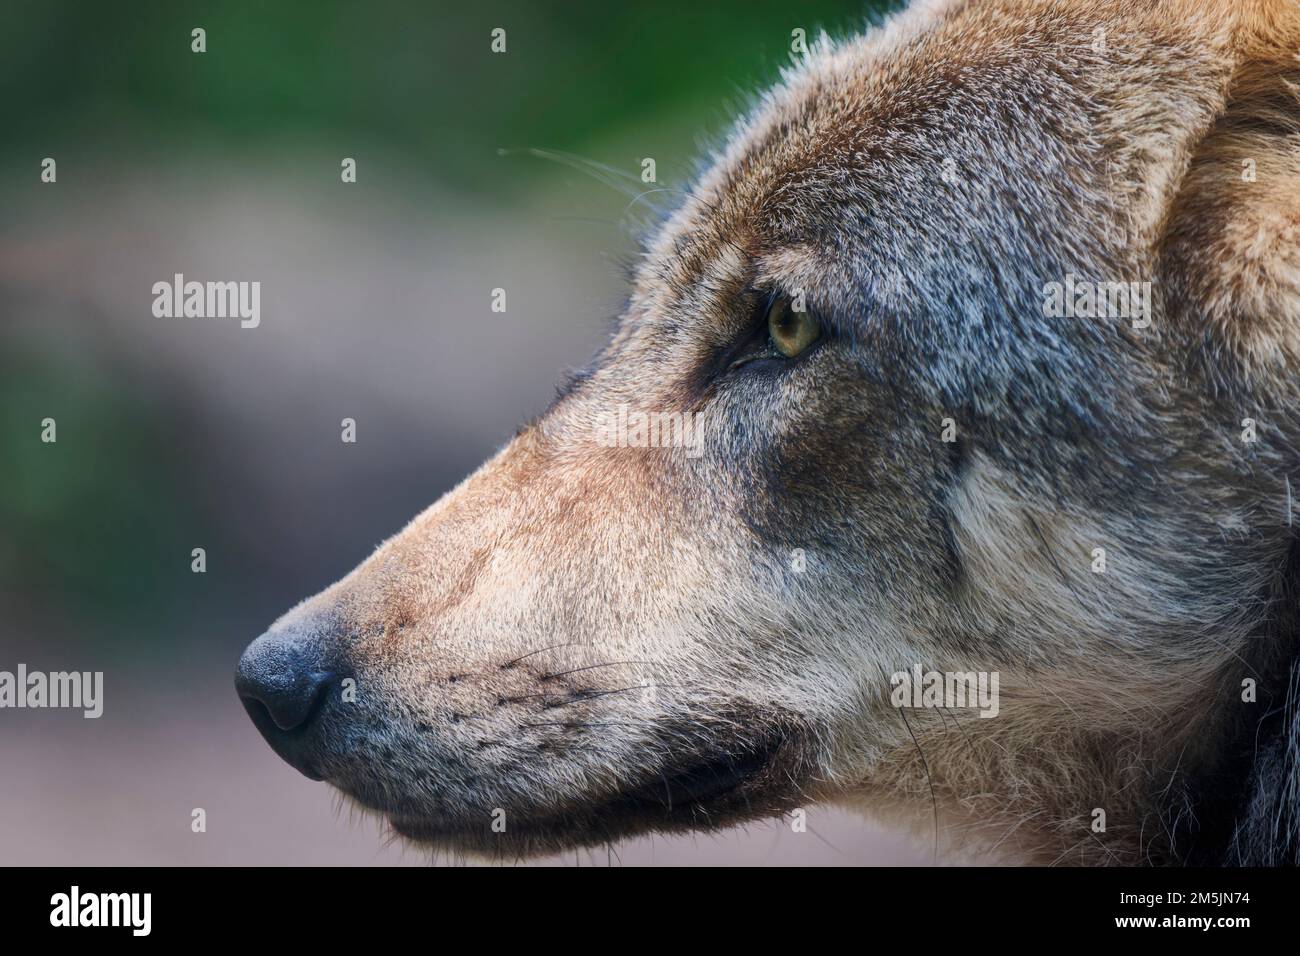 Europaeischer Loup, Canis lupus, le loup gris d'Europe Banque D'Images